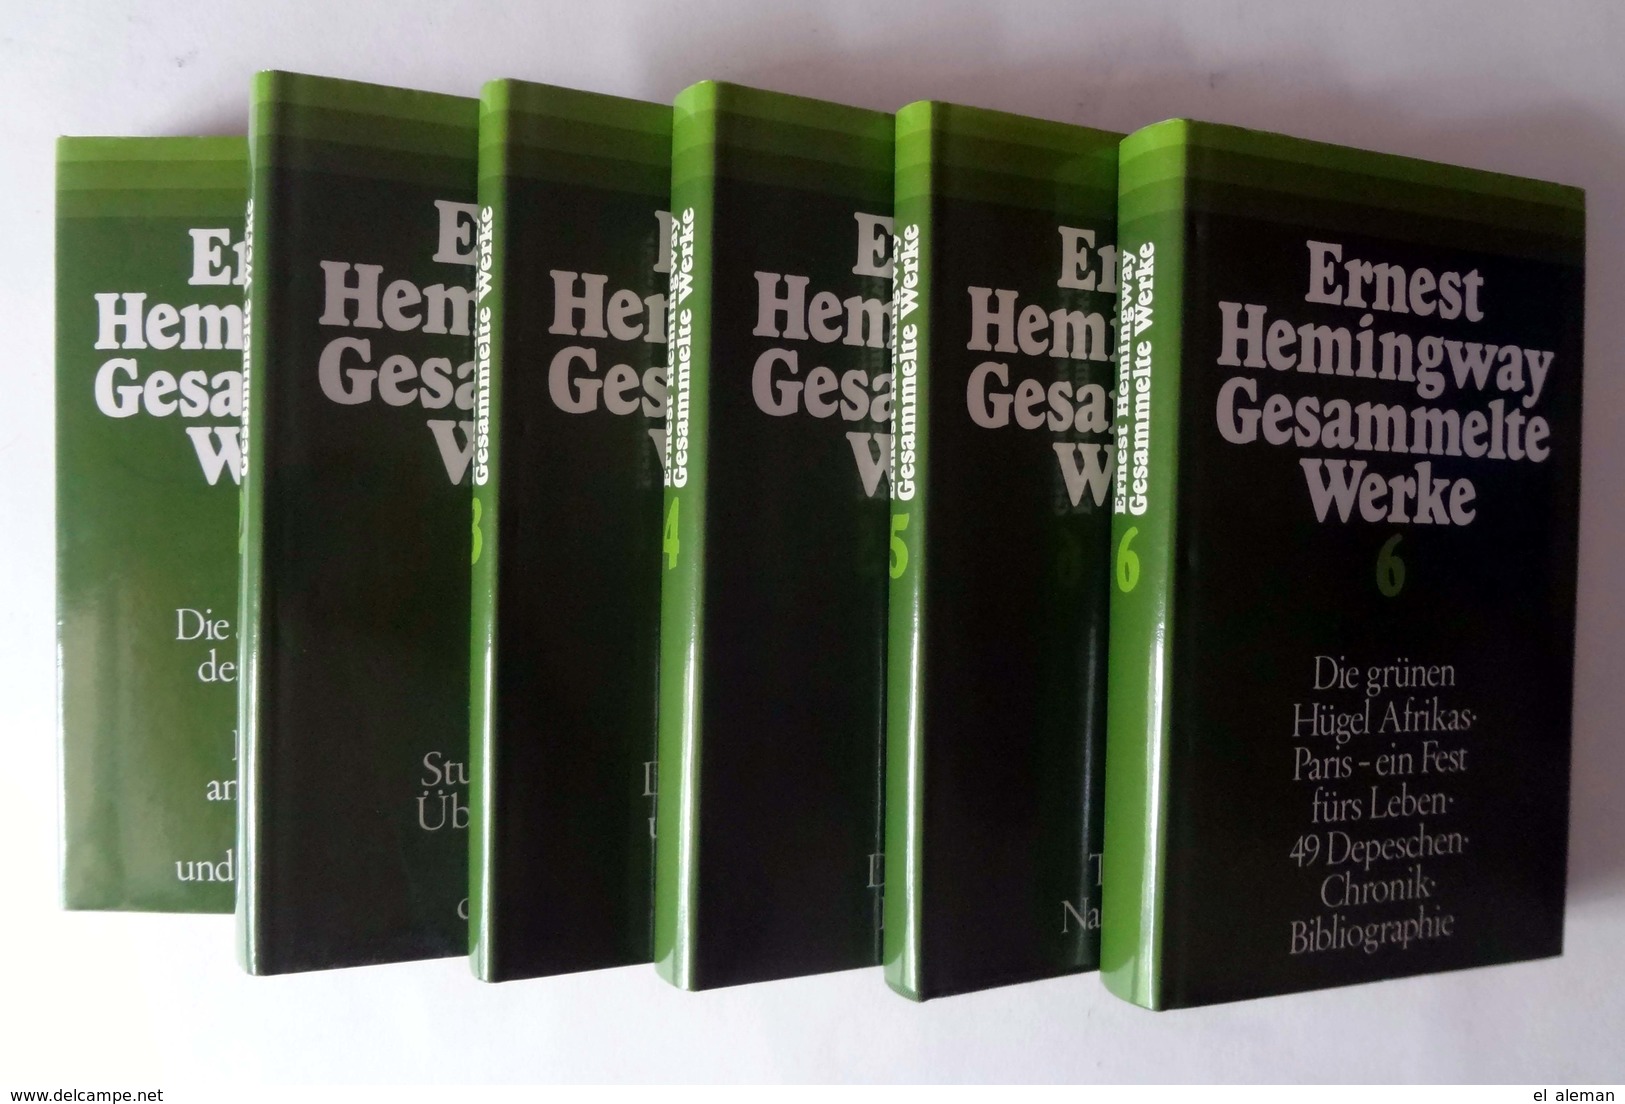 ERNEST Hemingway "Gesammelte WERKE" In 6 Bänden Komplett, 1. Auflage 1977, TOP-Zustand! - Ediciones Originales